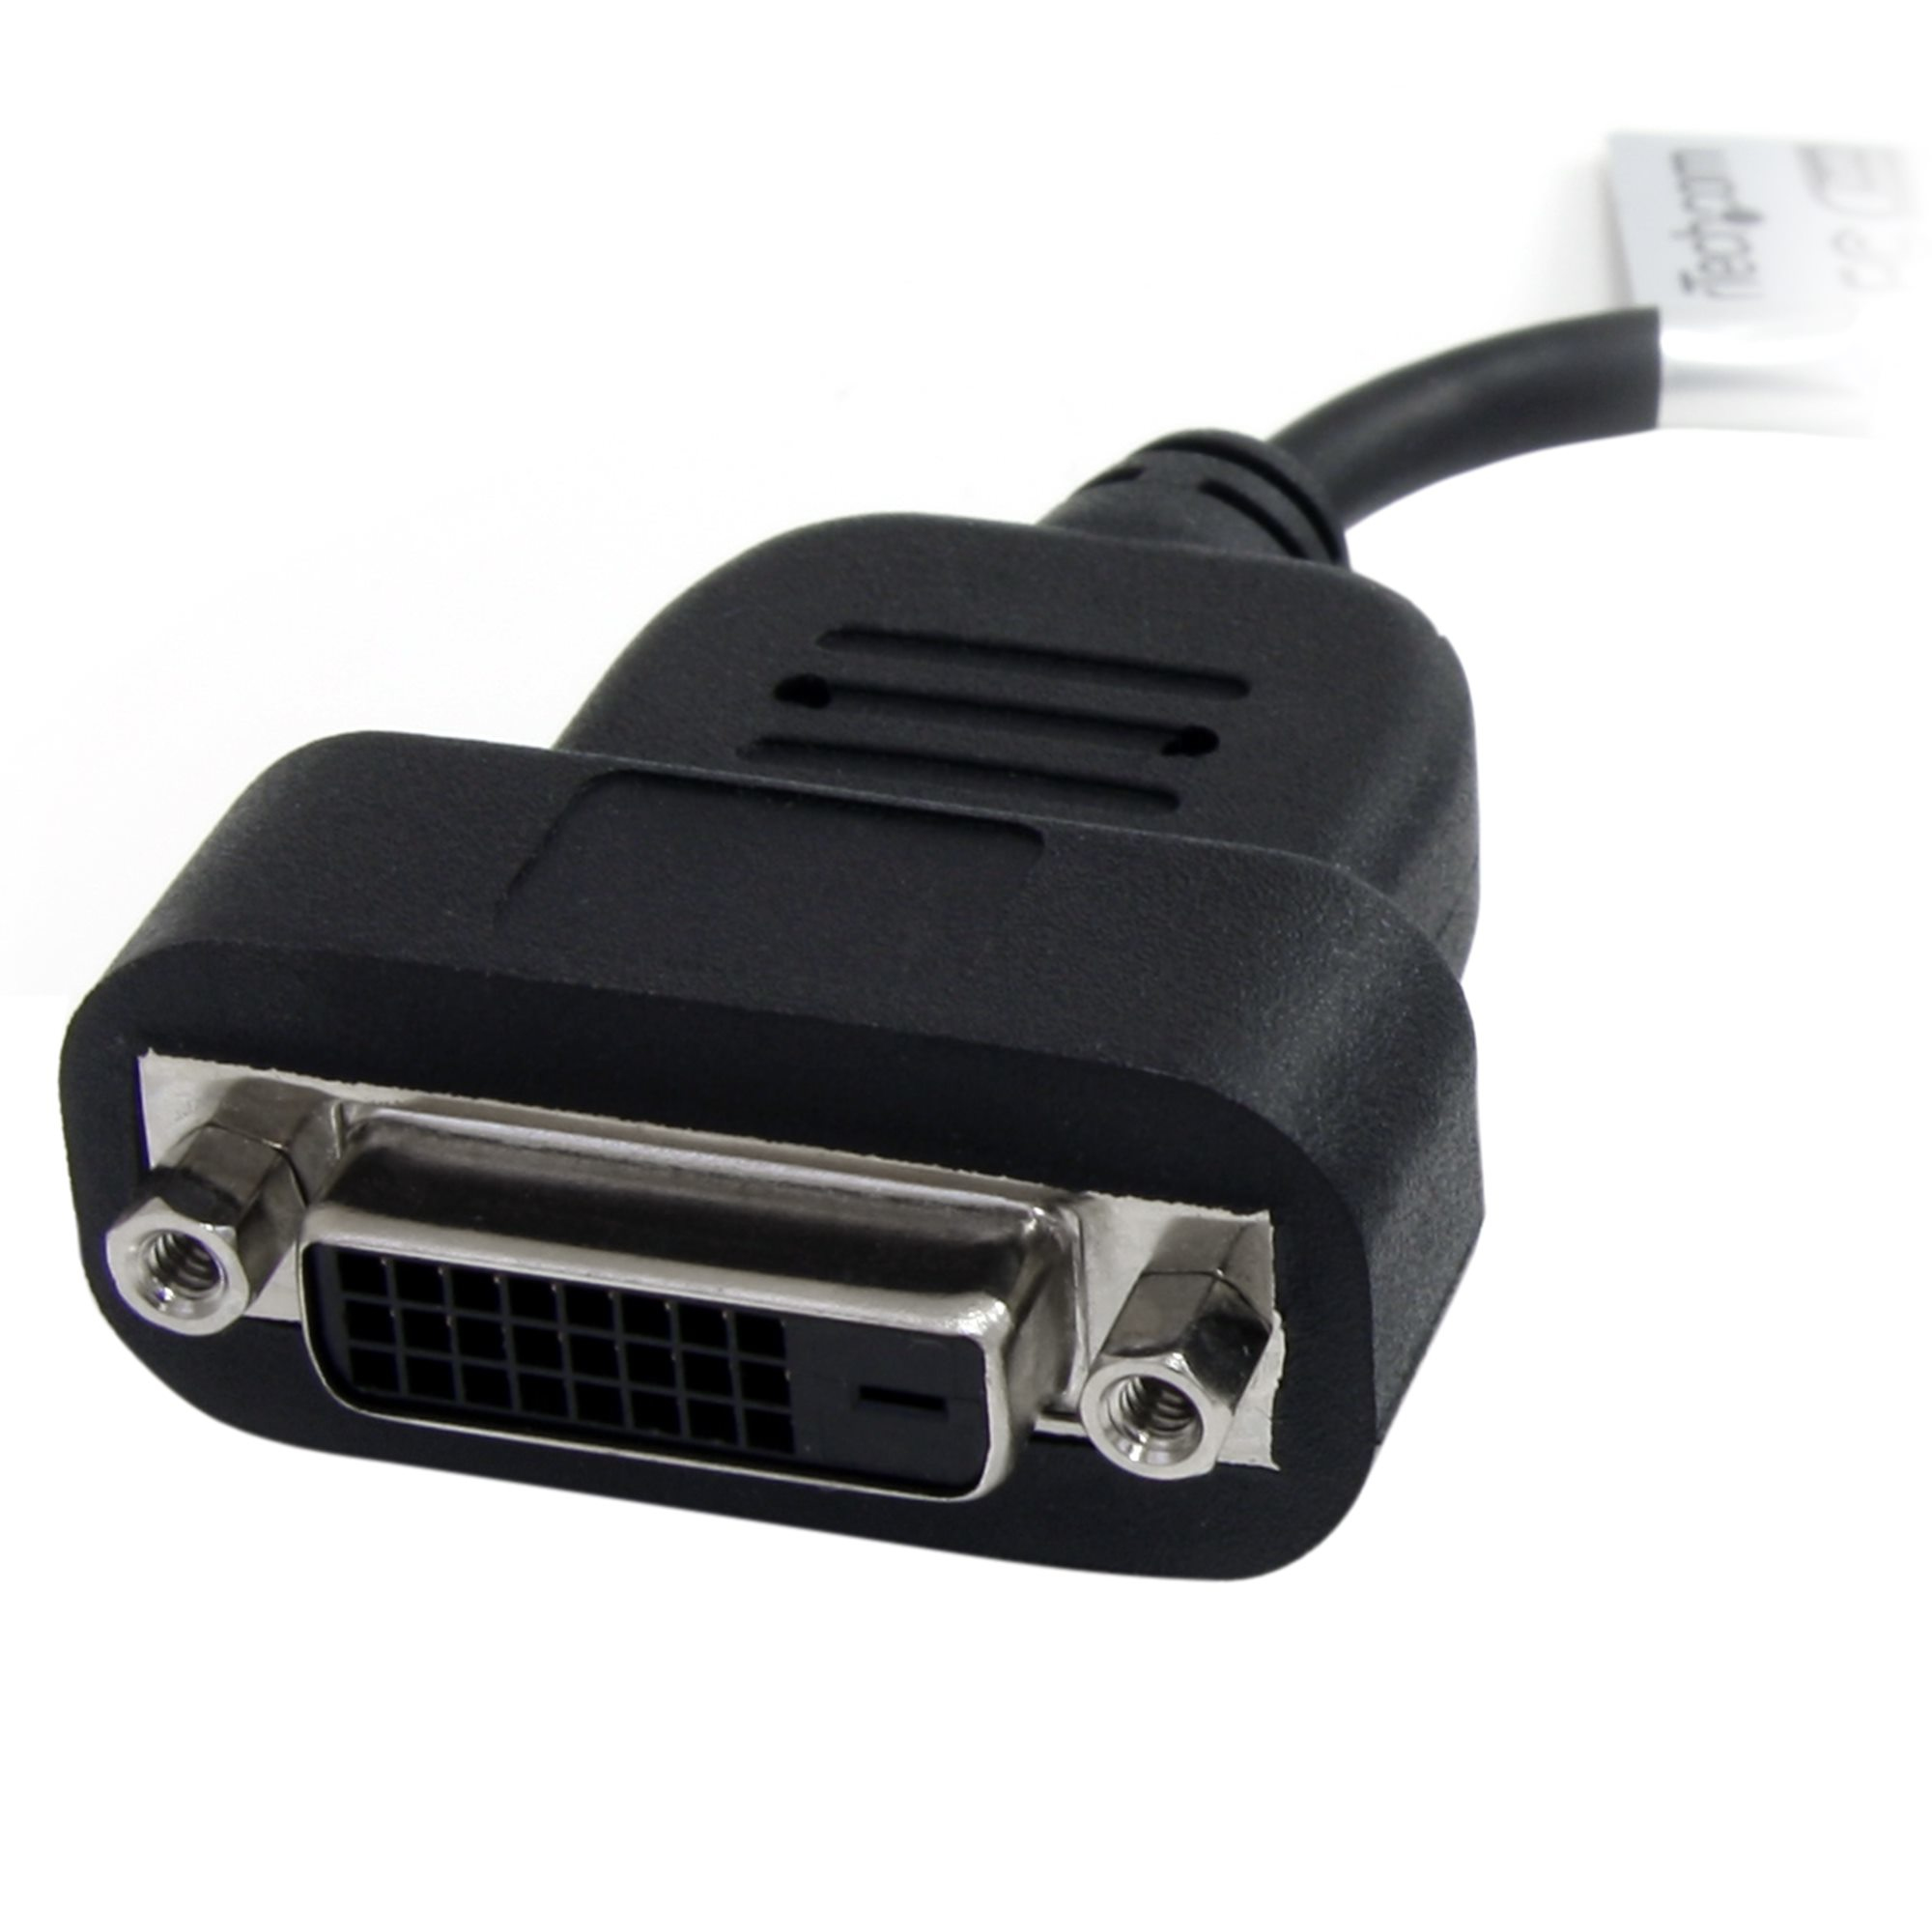 StarTech.com Aktiver DisplayPort auf DVI-D Adpater - DP zu DVI Single Link Konverter (Stecker/Buchse)